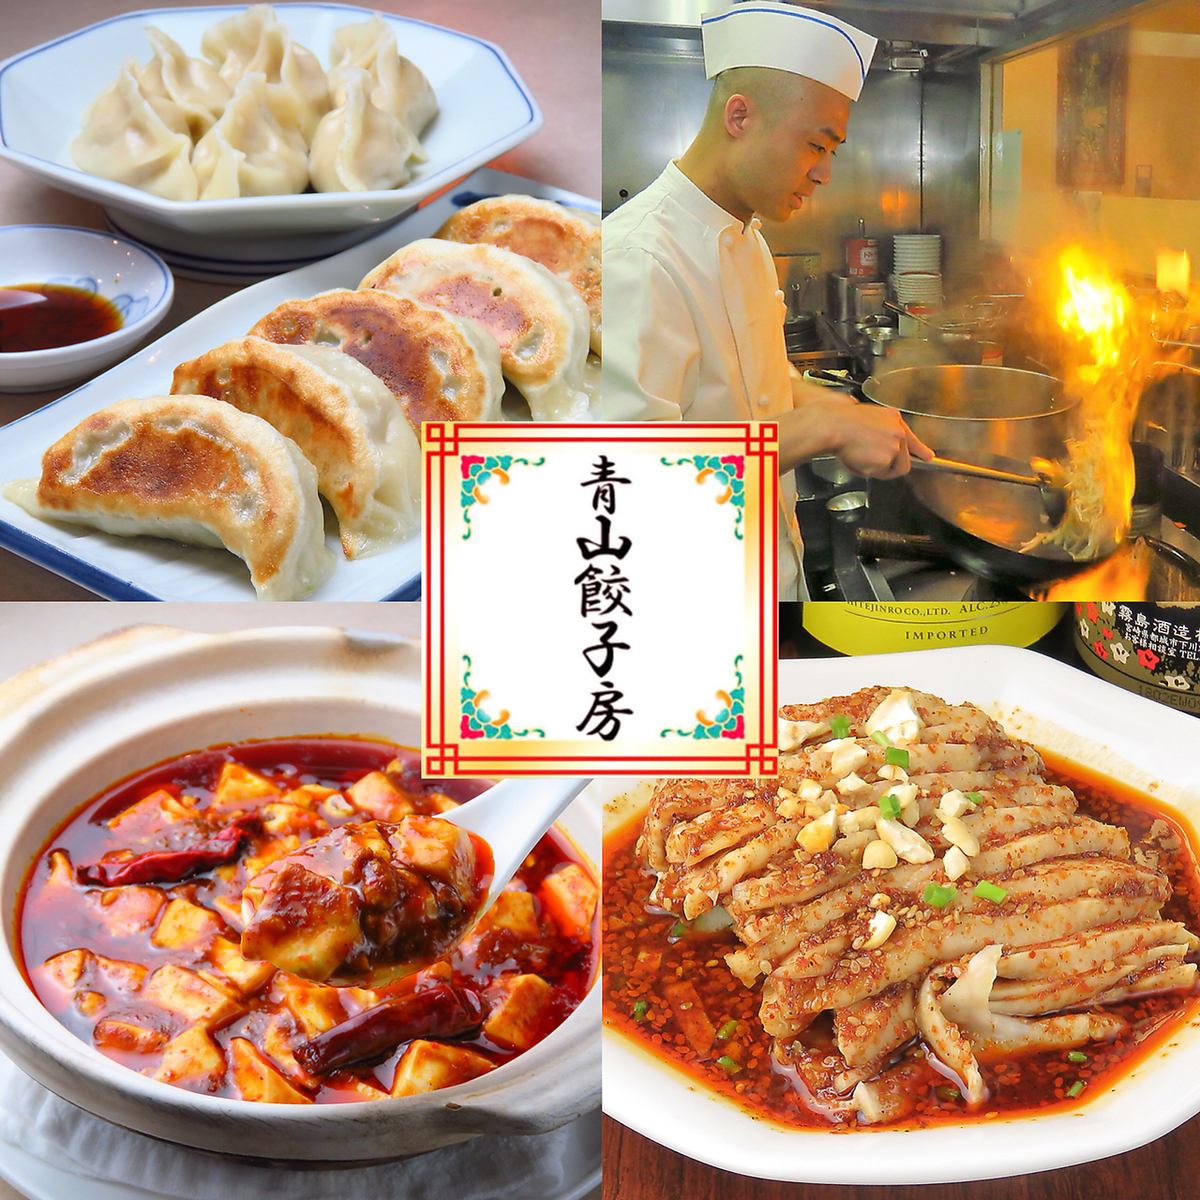 我们对正宗的中国菜充满信心！手工饺子是受欢迎的菜单☆